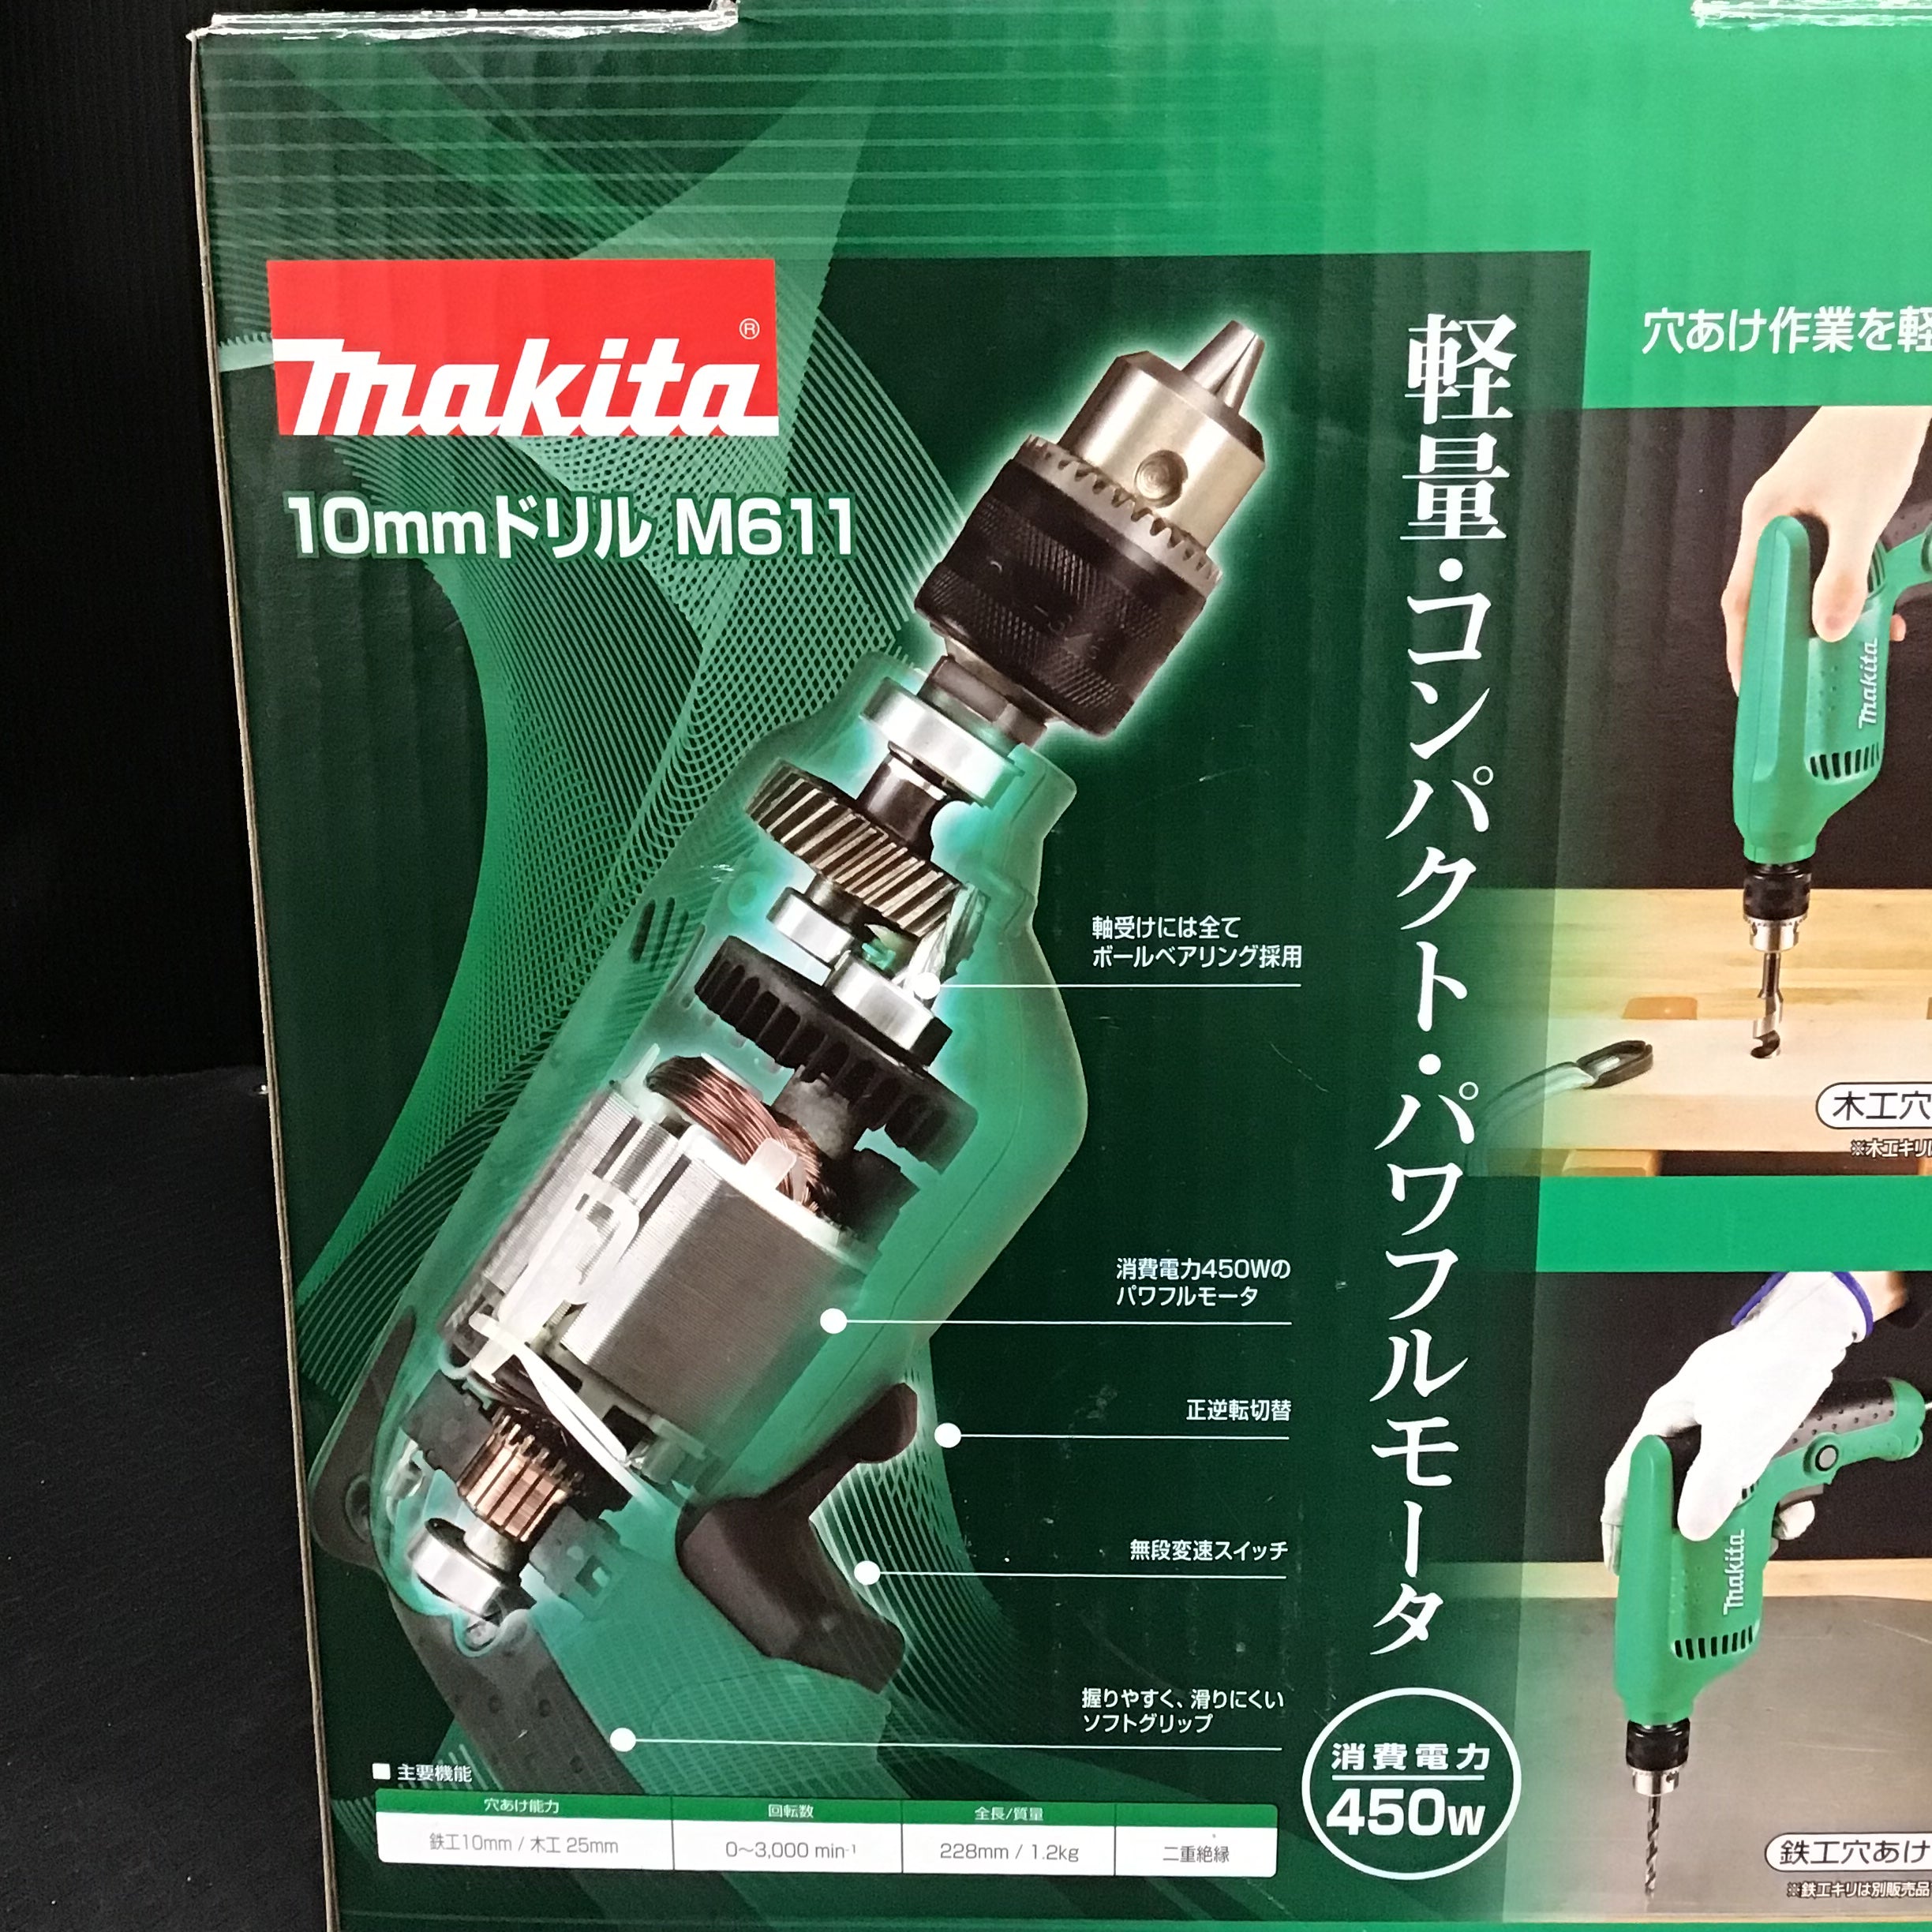 新到着 makita マキタ 電気ドリル M611 - tokyo-bunka.com